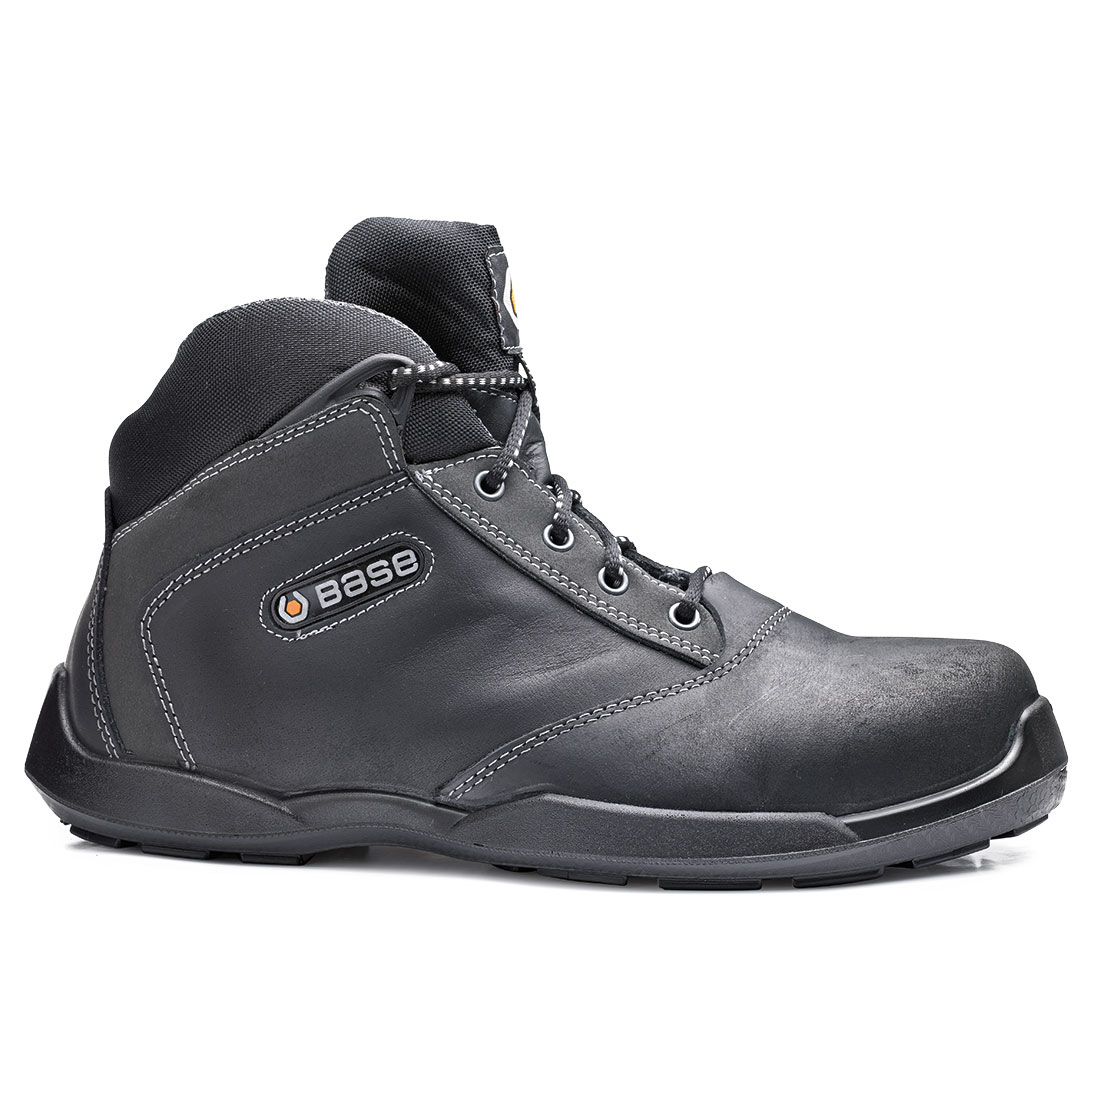 Base Hockey Ankle Shoes Black/Grey B0653